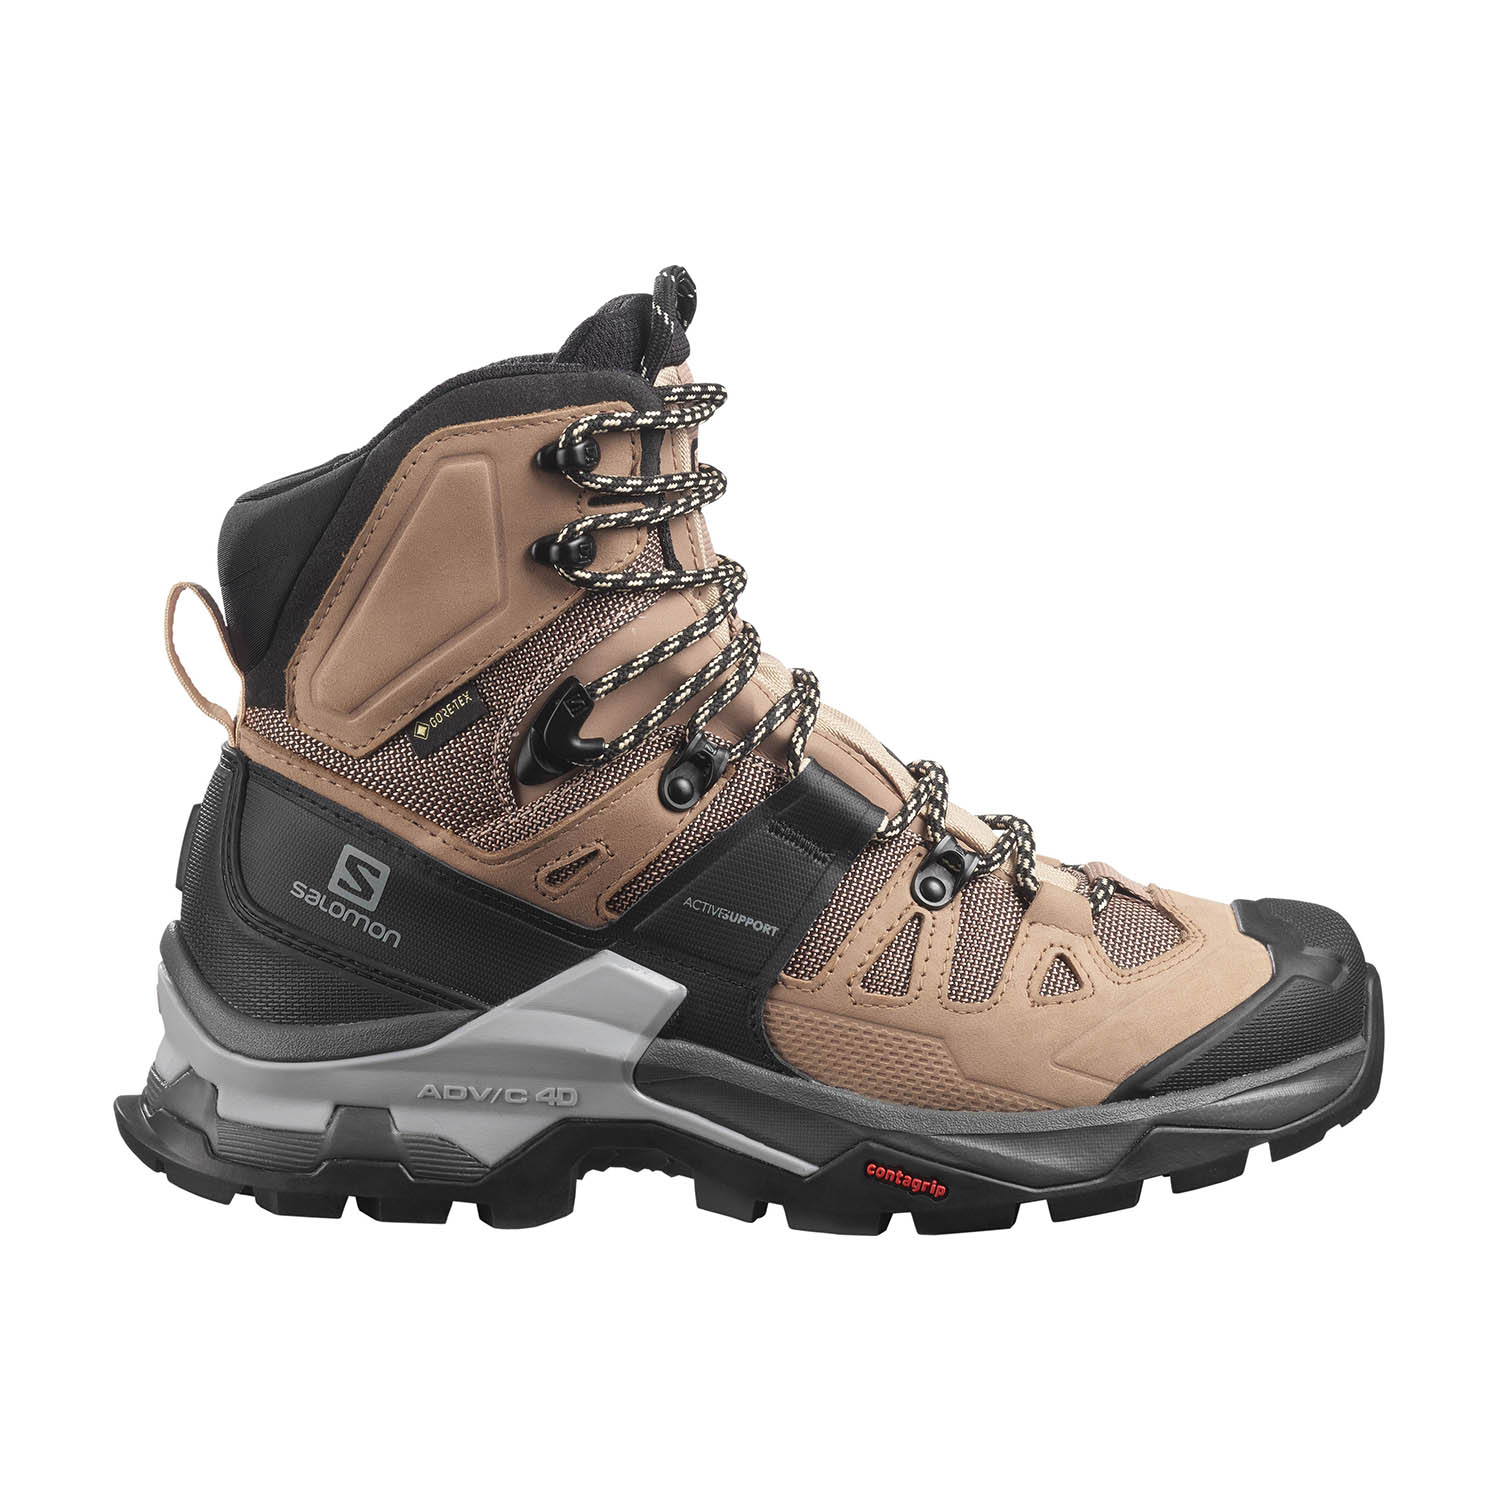 Salomon Quest 4 GTX Women's Hiking Shoes - Sirocco/Mocha Mousse